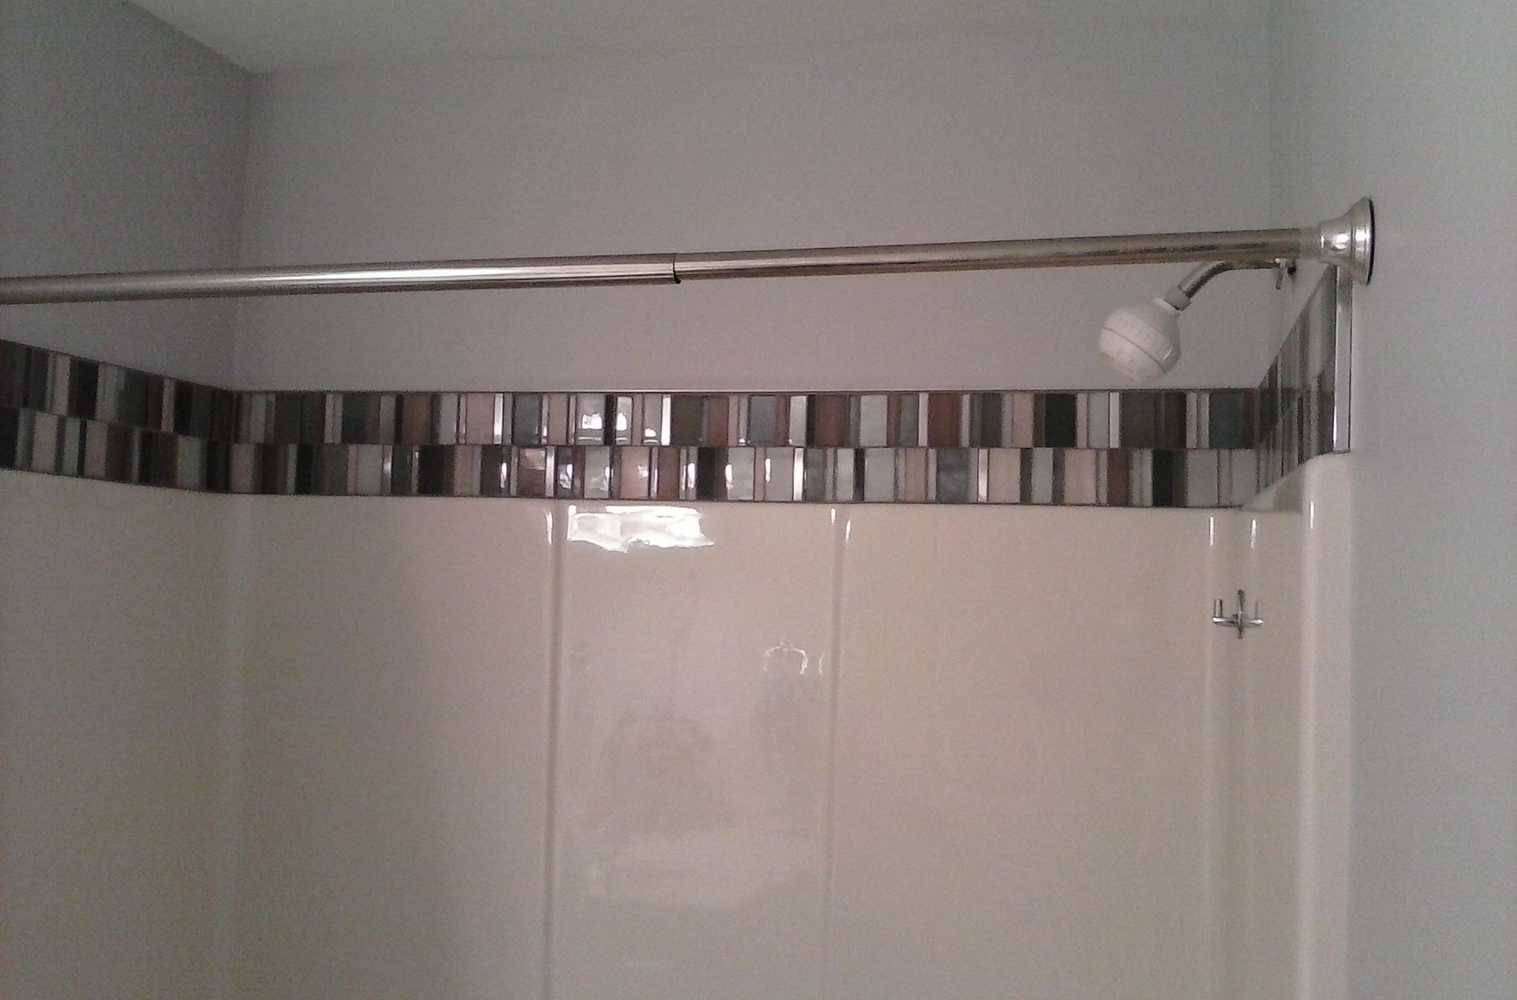 Custom built tiled showers